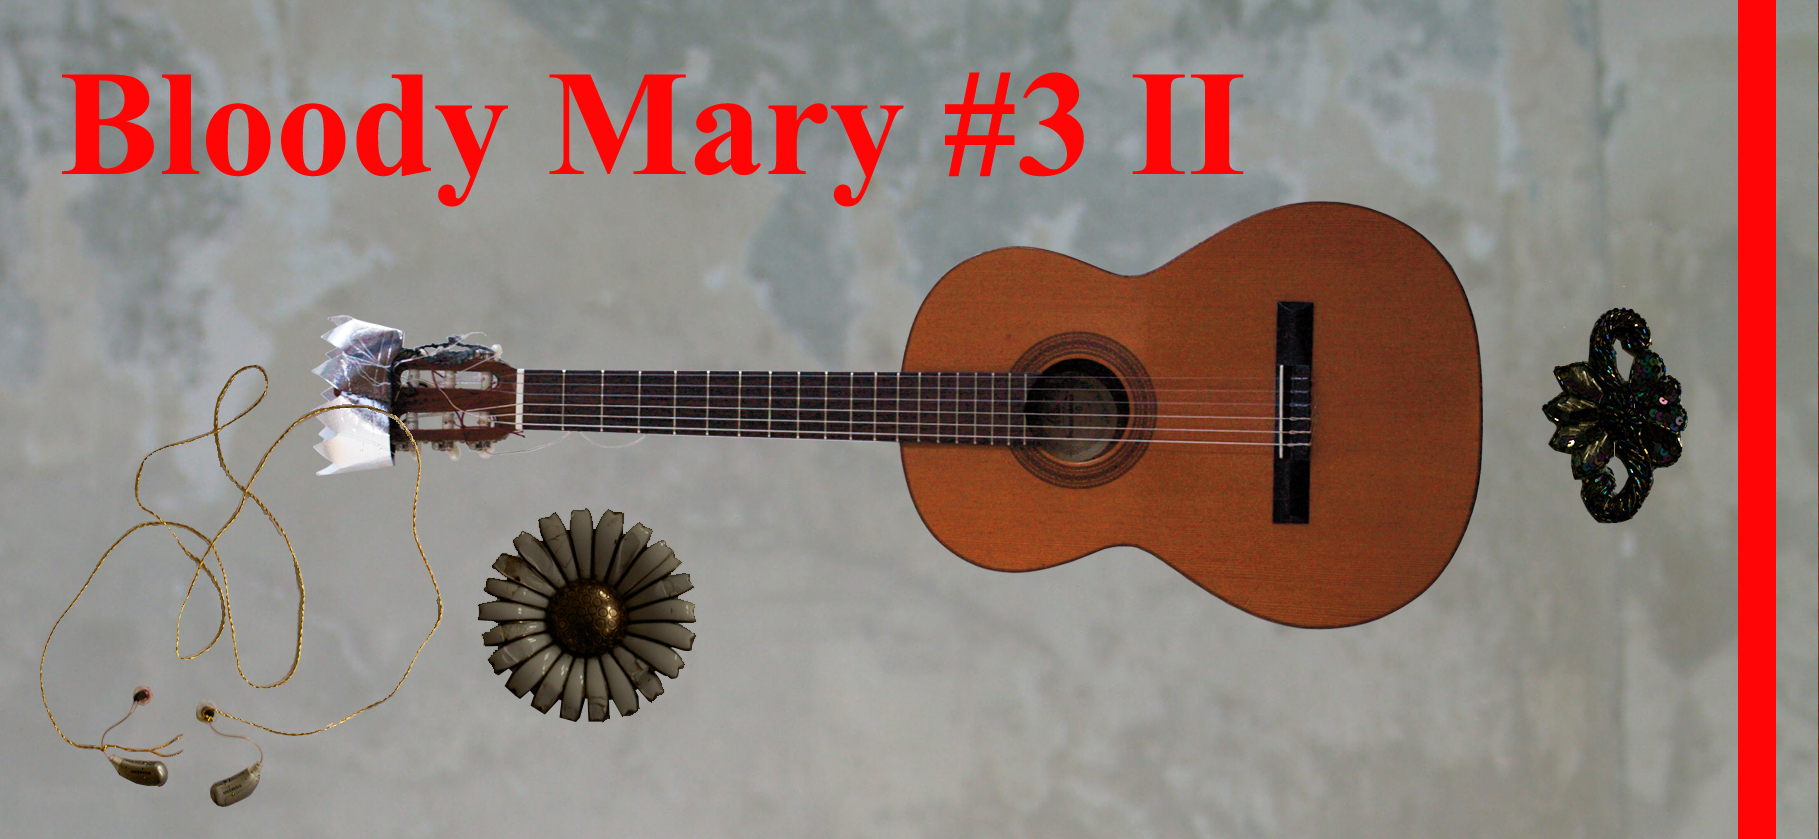 Bloody Mary #3 II Moribund/ plakat Sara Hamming